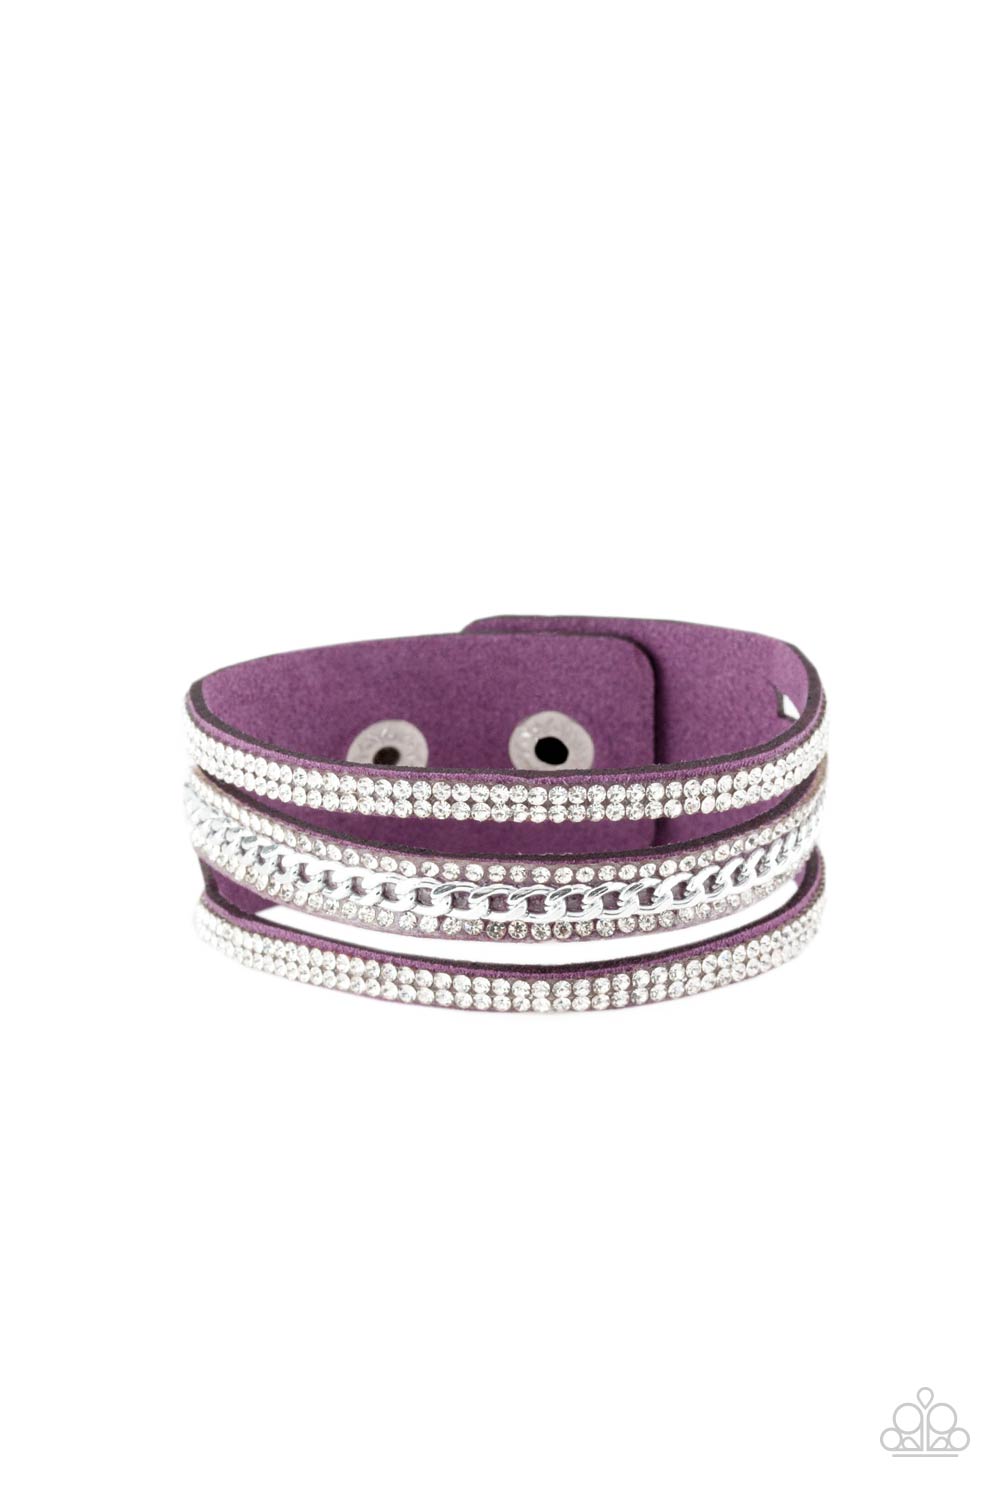 Rollin In Rhinestones Purple
Bracelet - Daria's Blings N Things